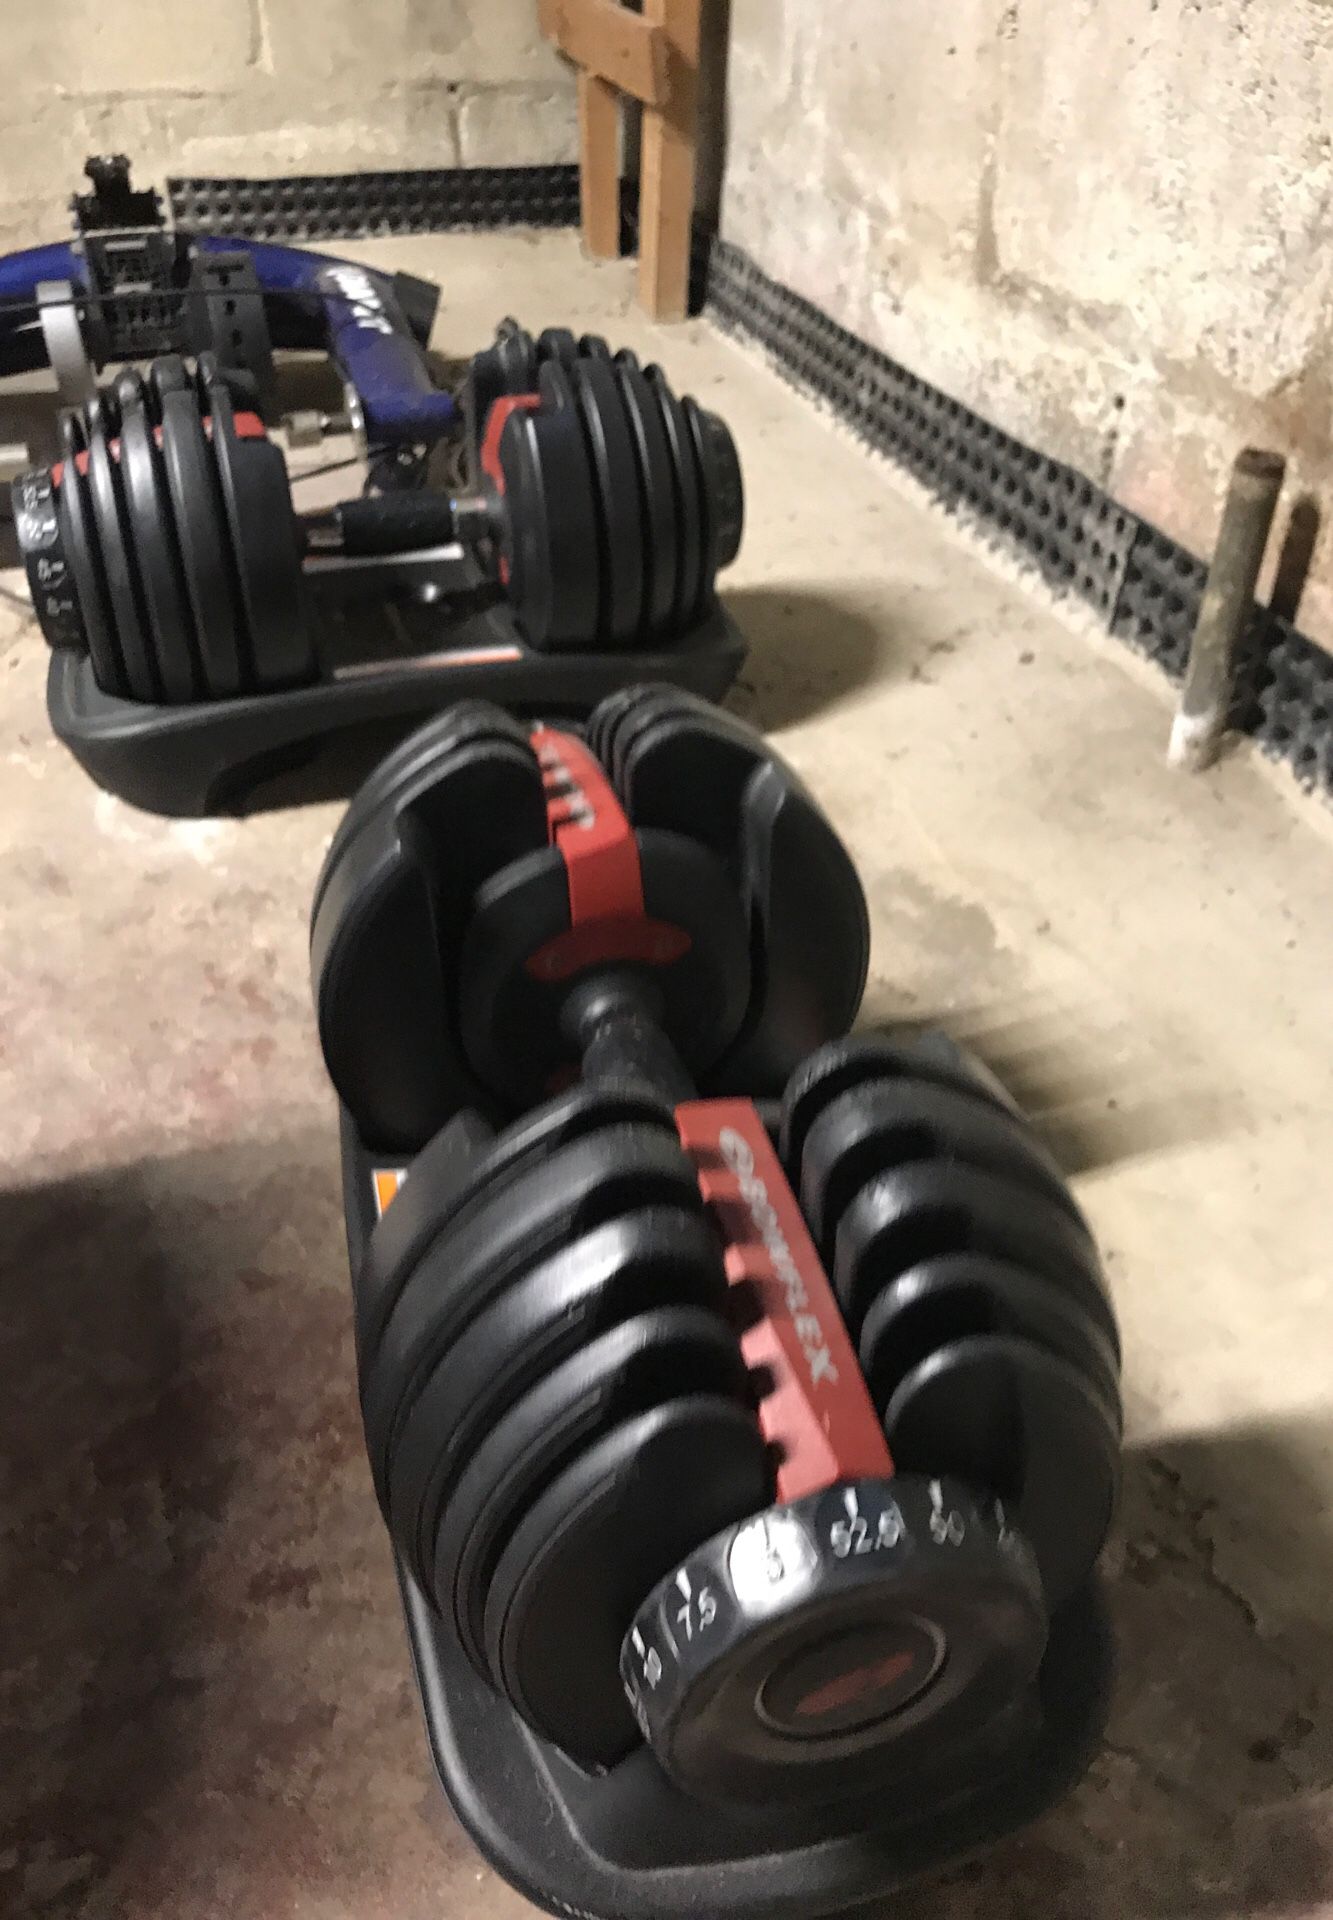 Bowflex adjustable weights